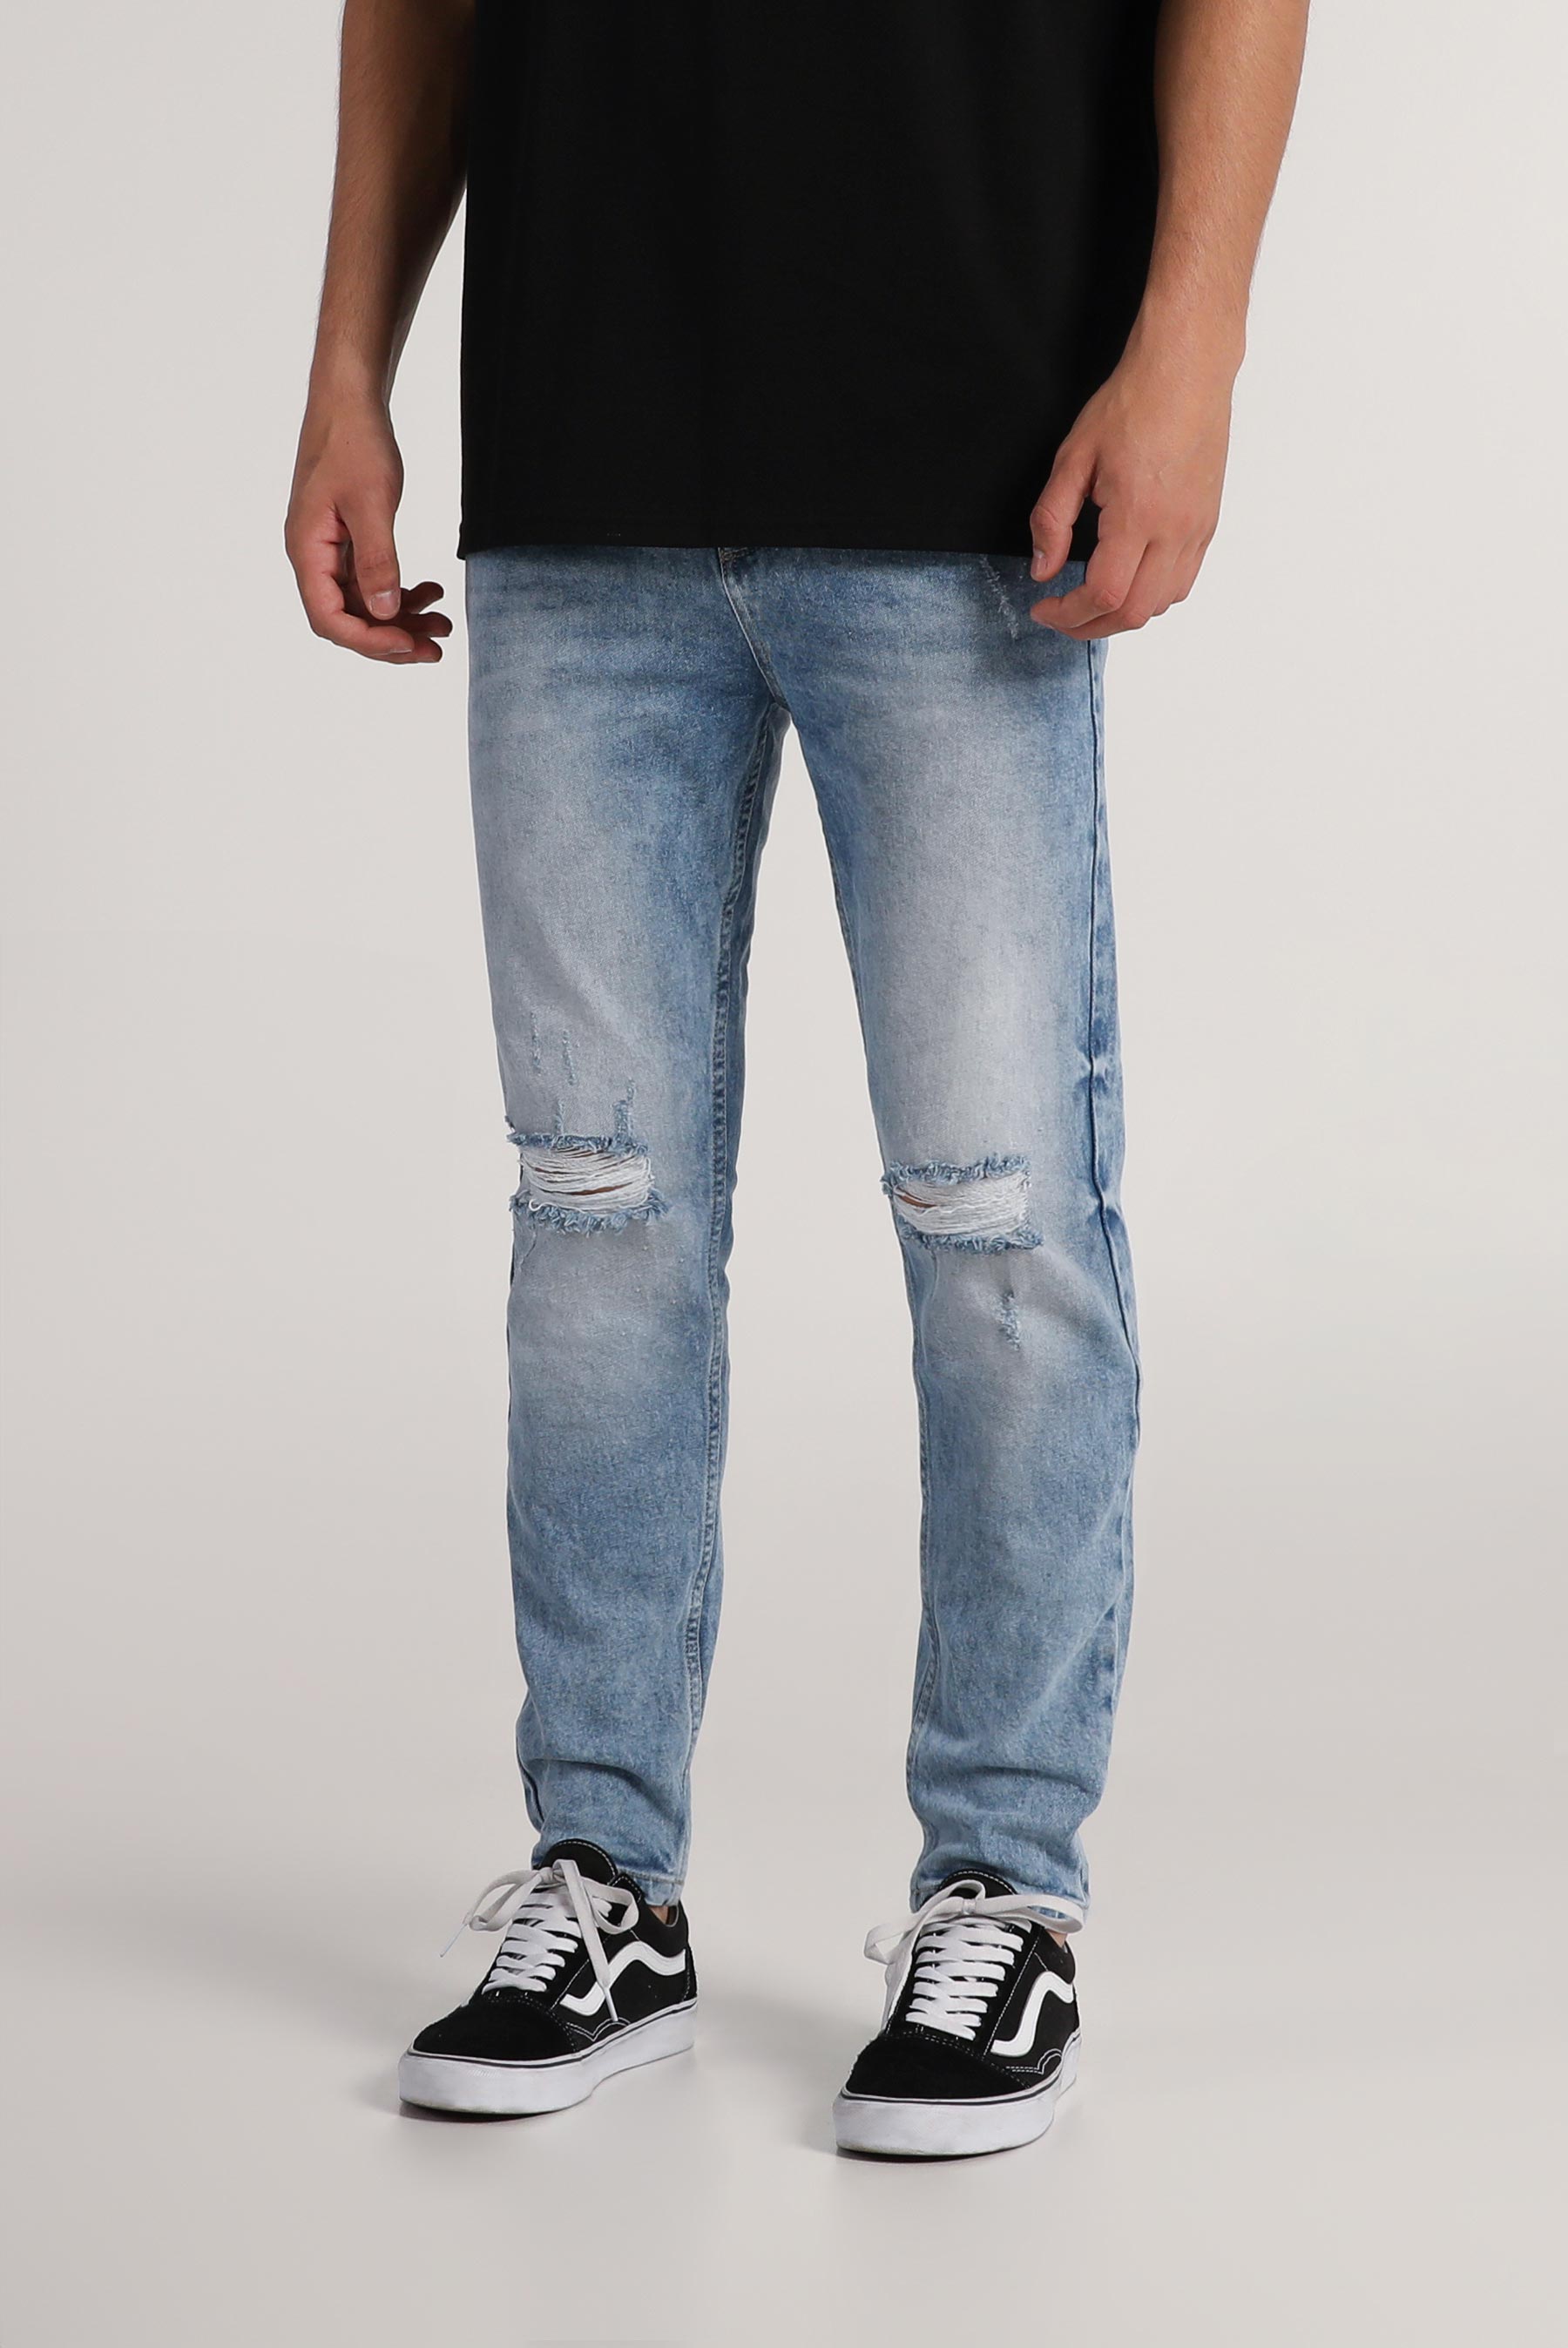 Estilo Kpop outfit para mujer con saco gris y boyfriend jeans 】